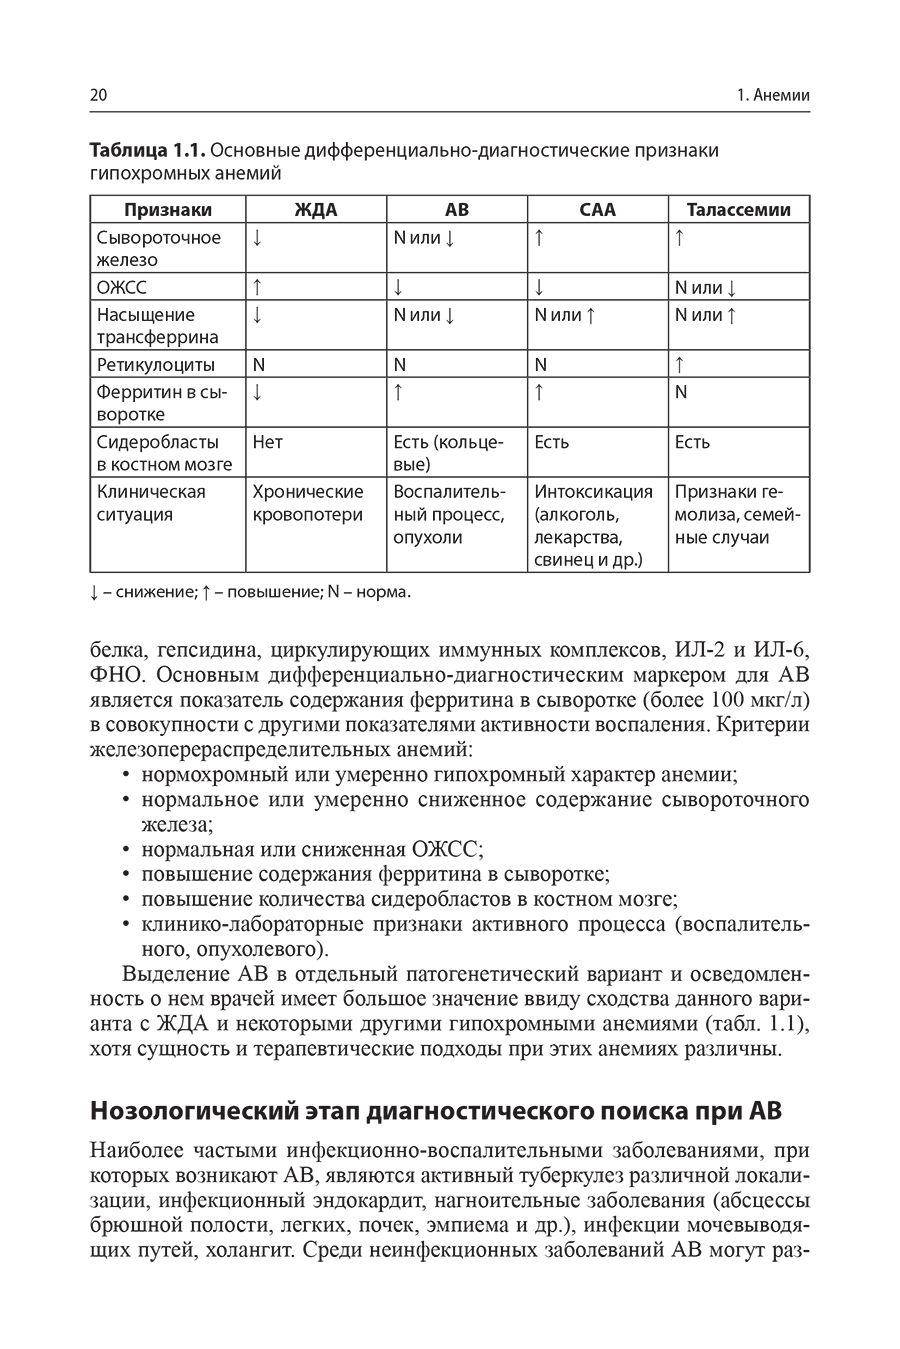 Таблица 1.1. Основные дифференциально-диагностические признаки гипохромных анемий